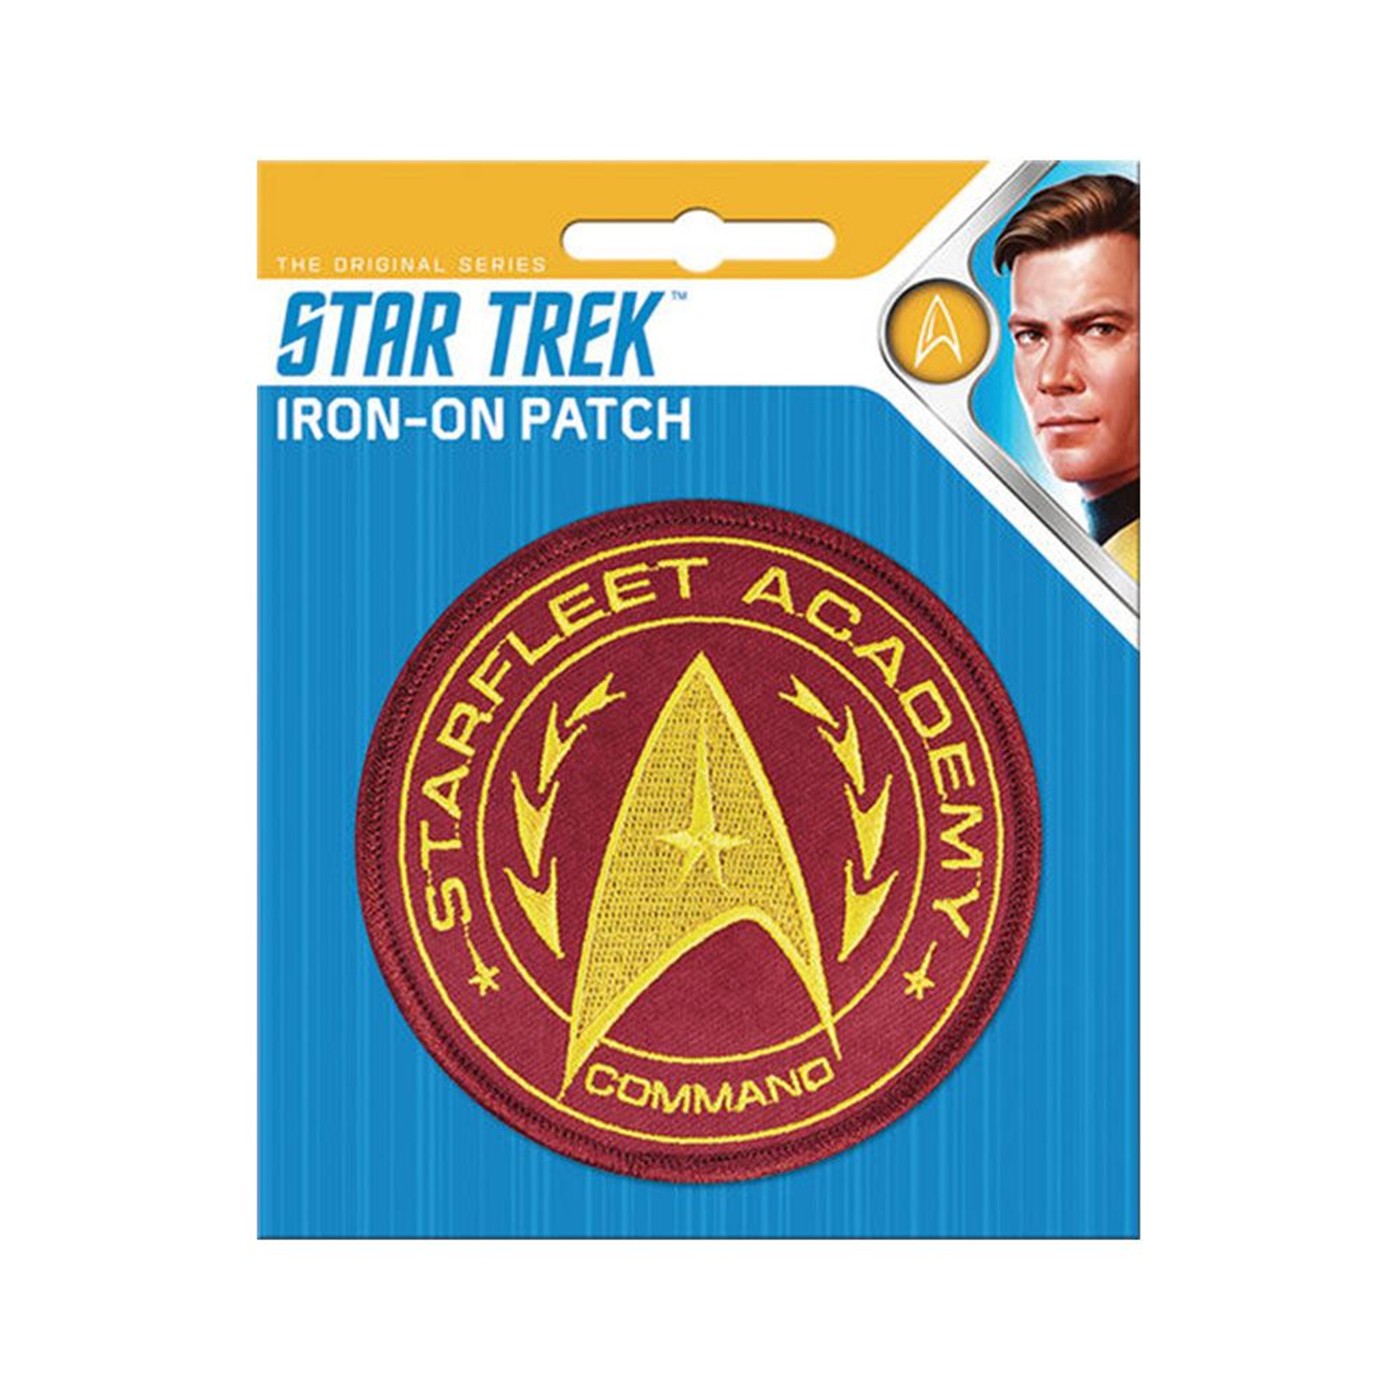 Star Trek Star Fleet Academy Patch